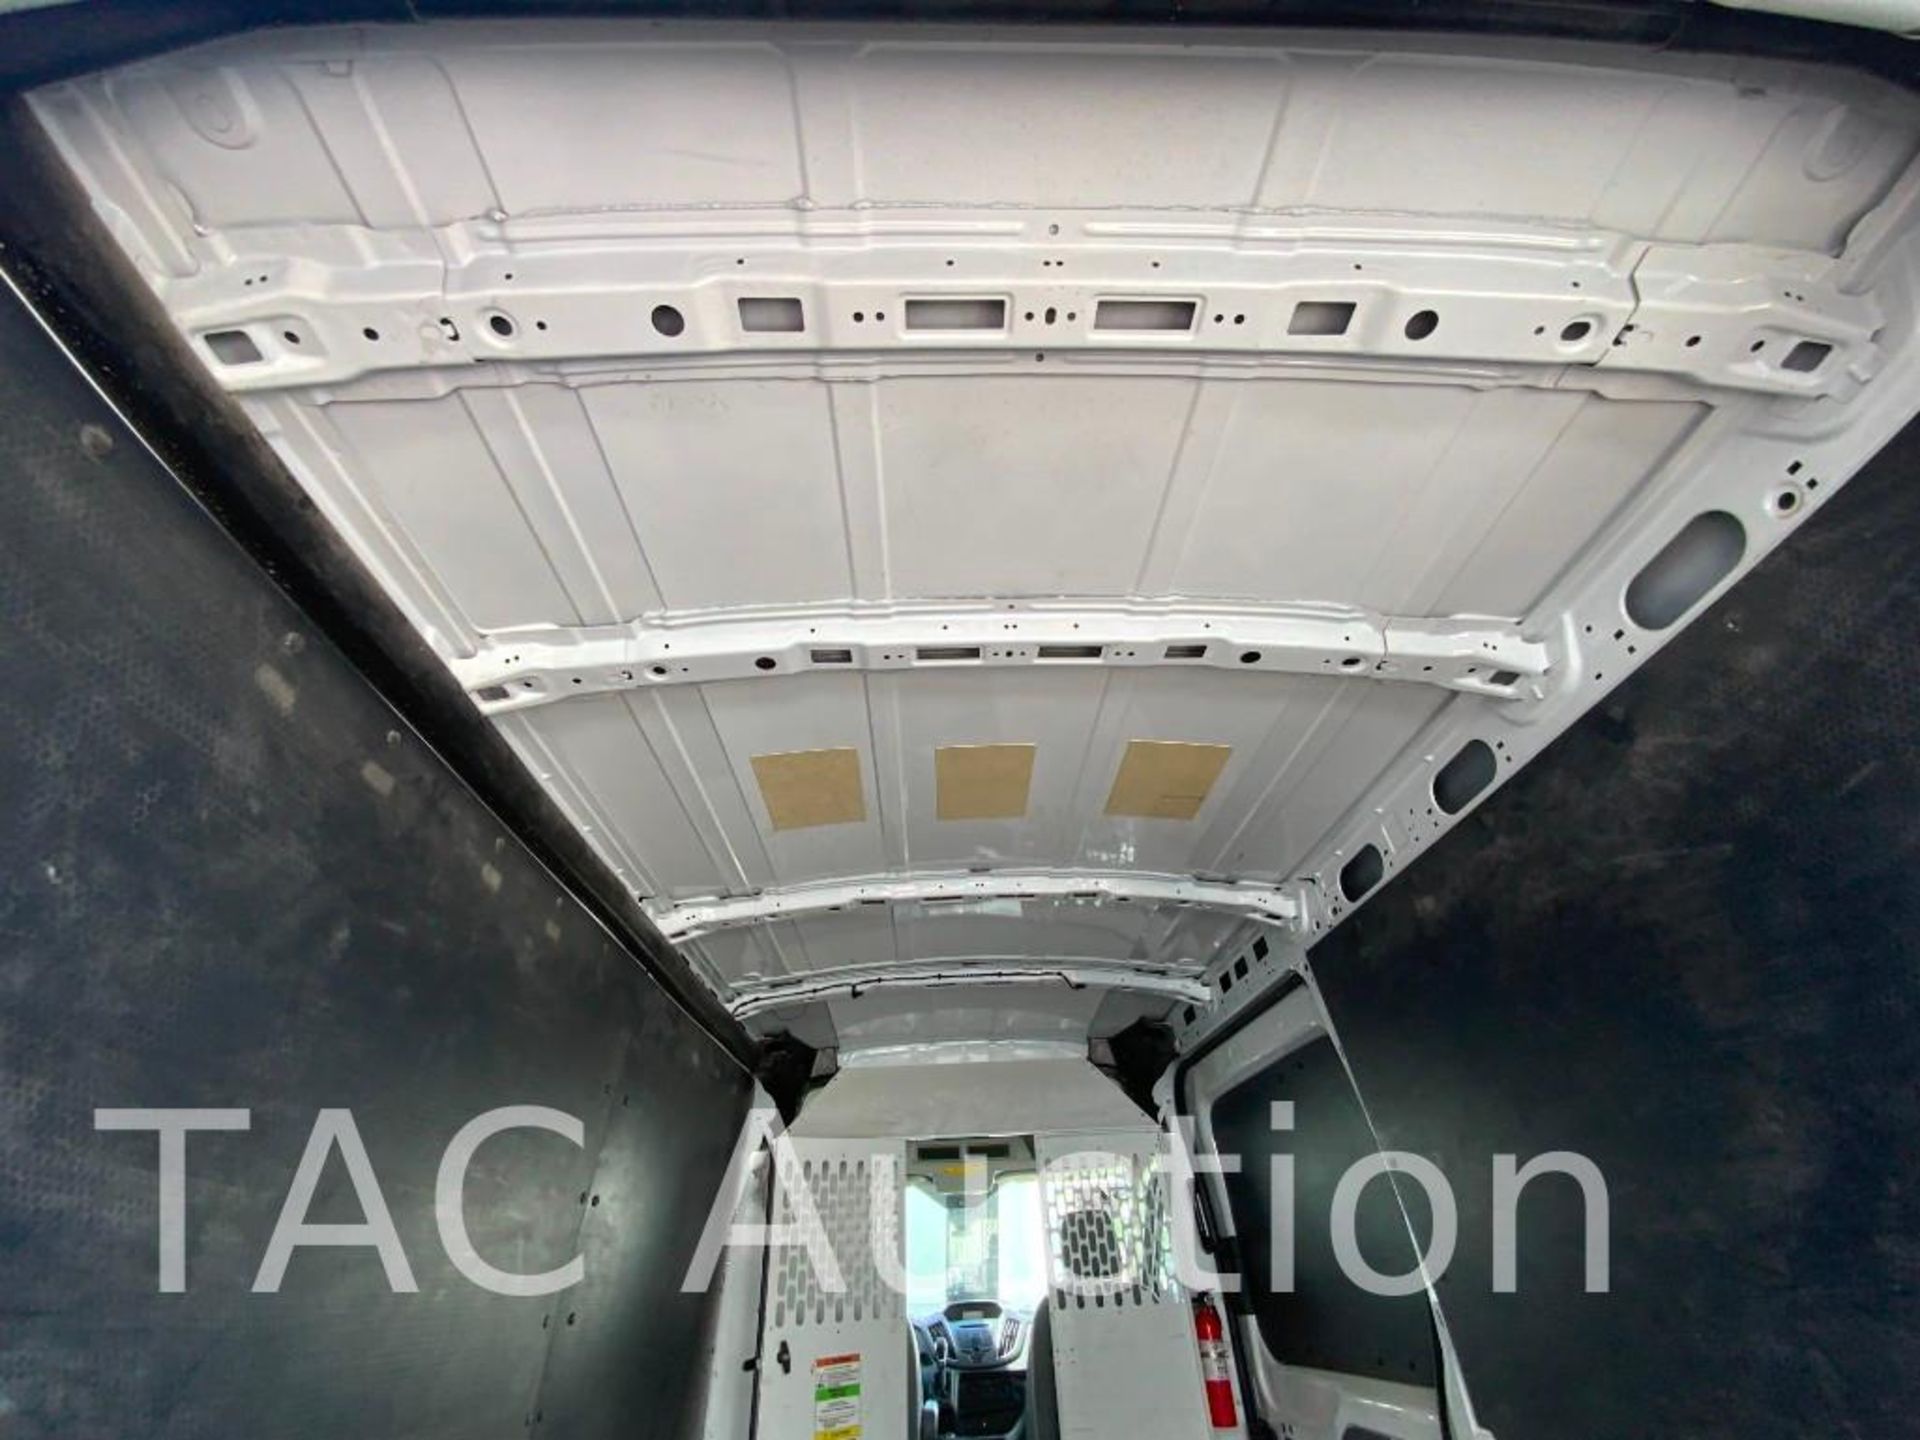 2019 Ford Transit 150 Cargo Van - Image 16 of 37